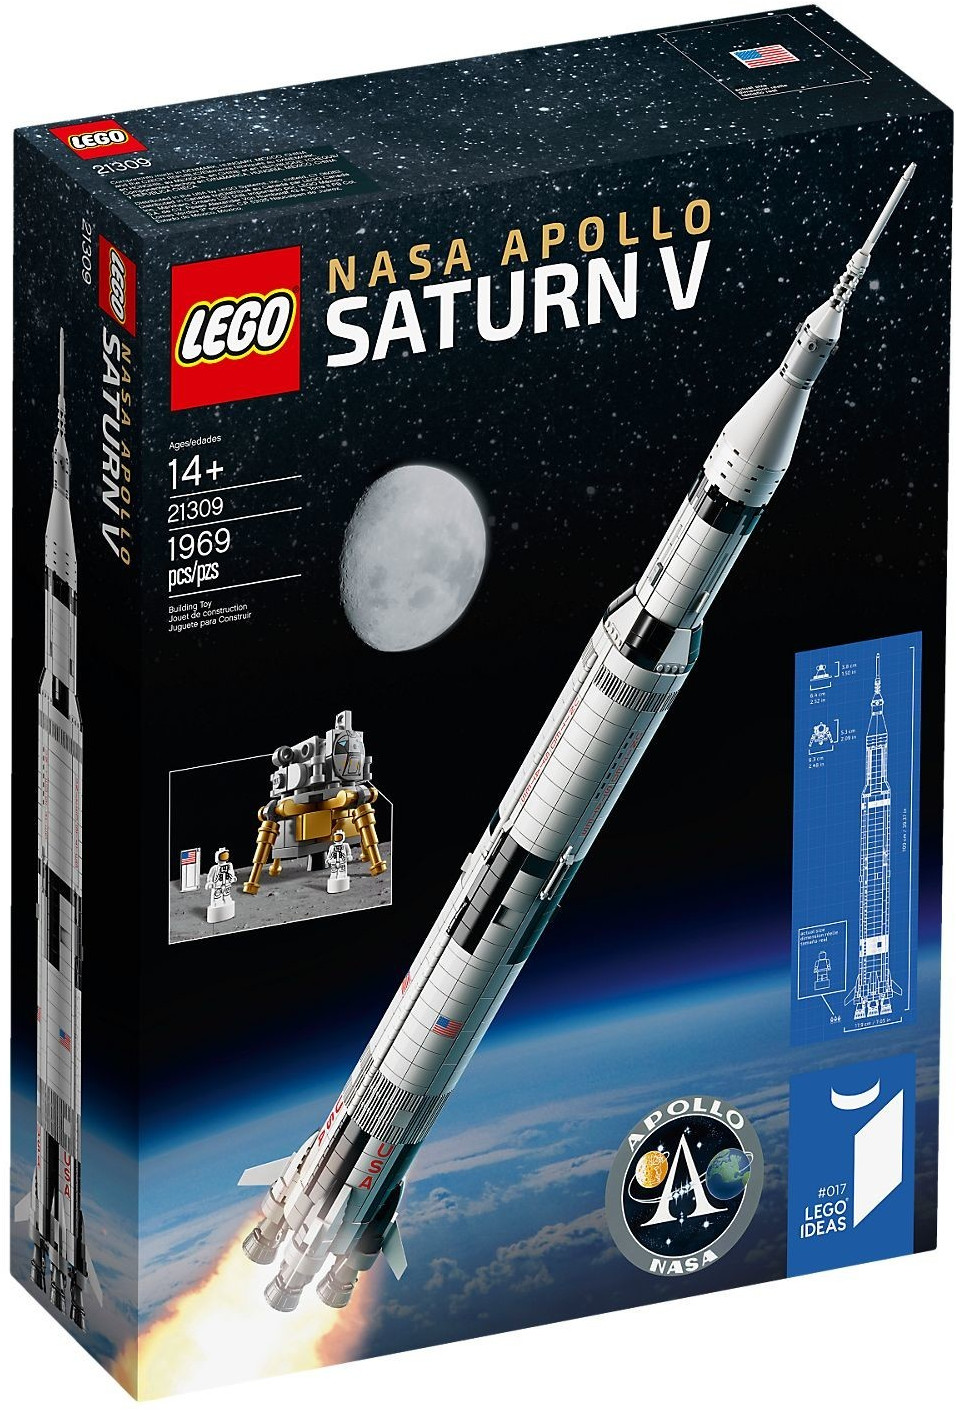 Imagen de LEGO 21309 Nasa Apollo Saturn V